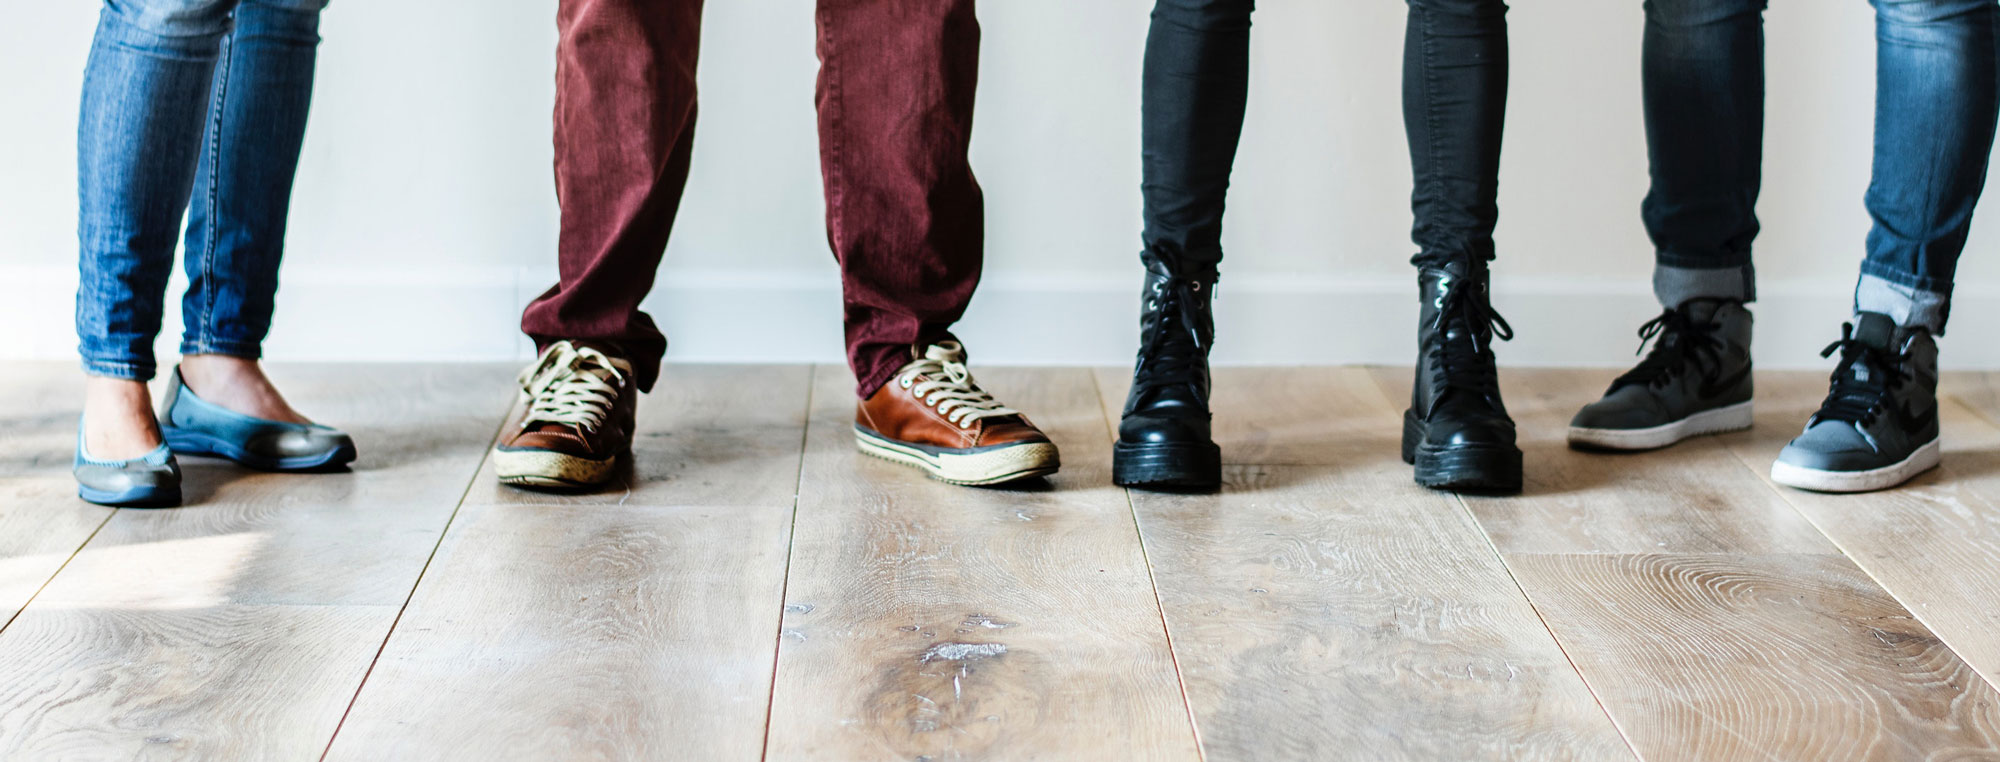 Tale Gå ud Sociologi Lugtfjerner til sko og støvler | Effektiv, billig og 100% naturprodukt